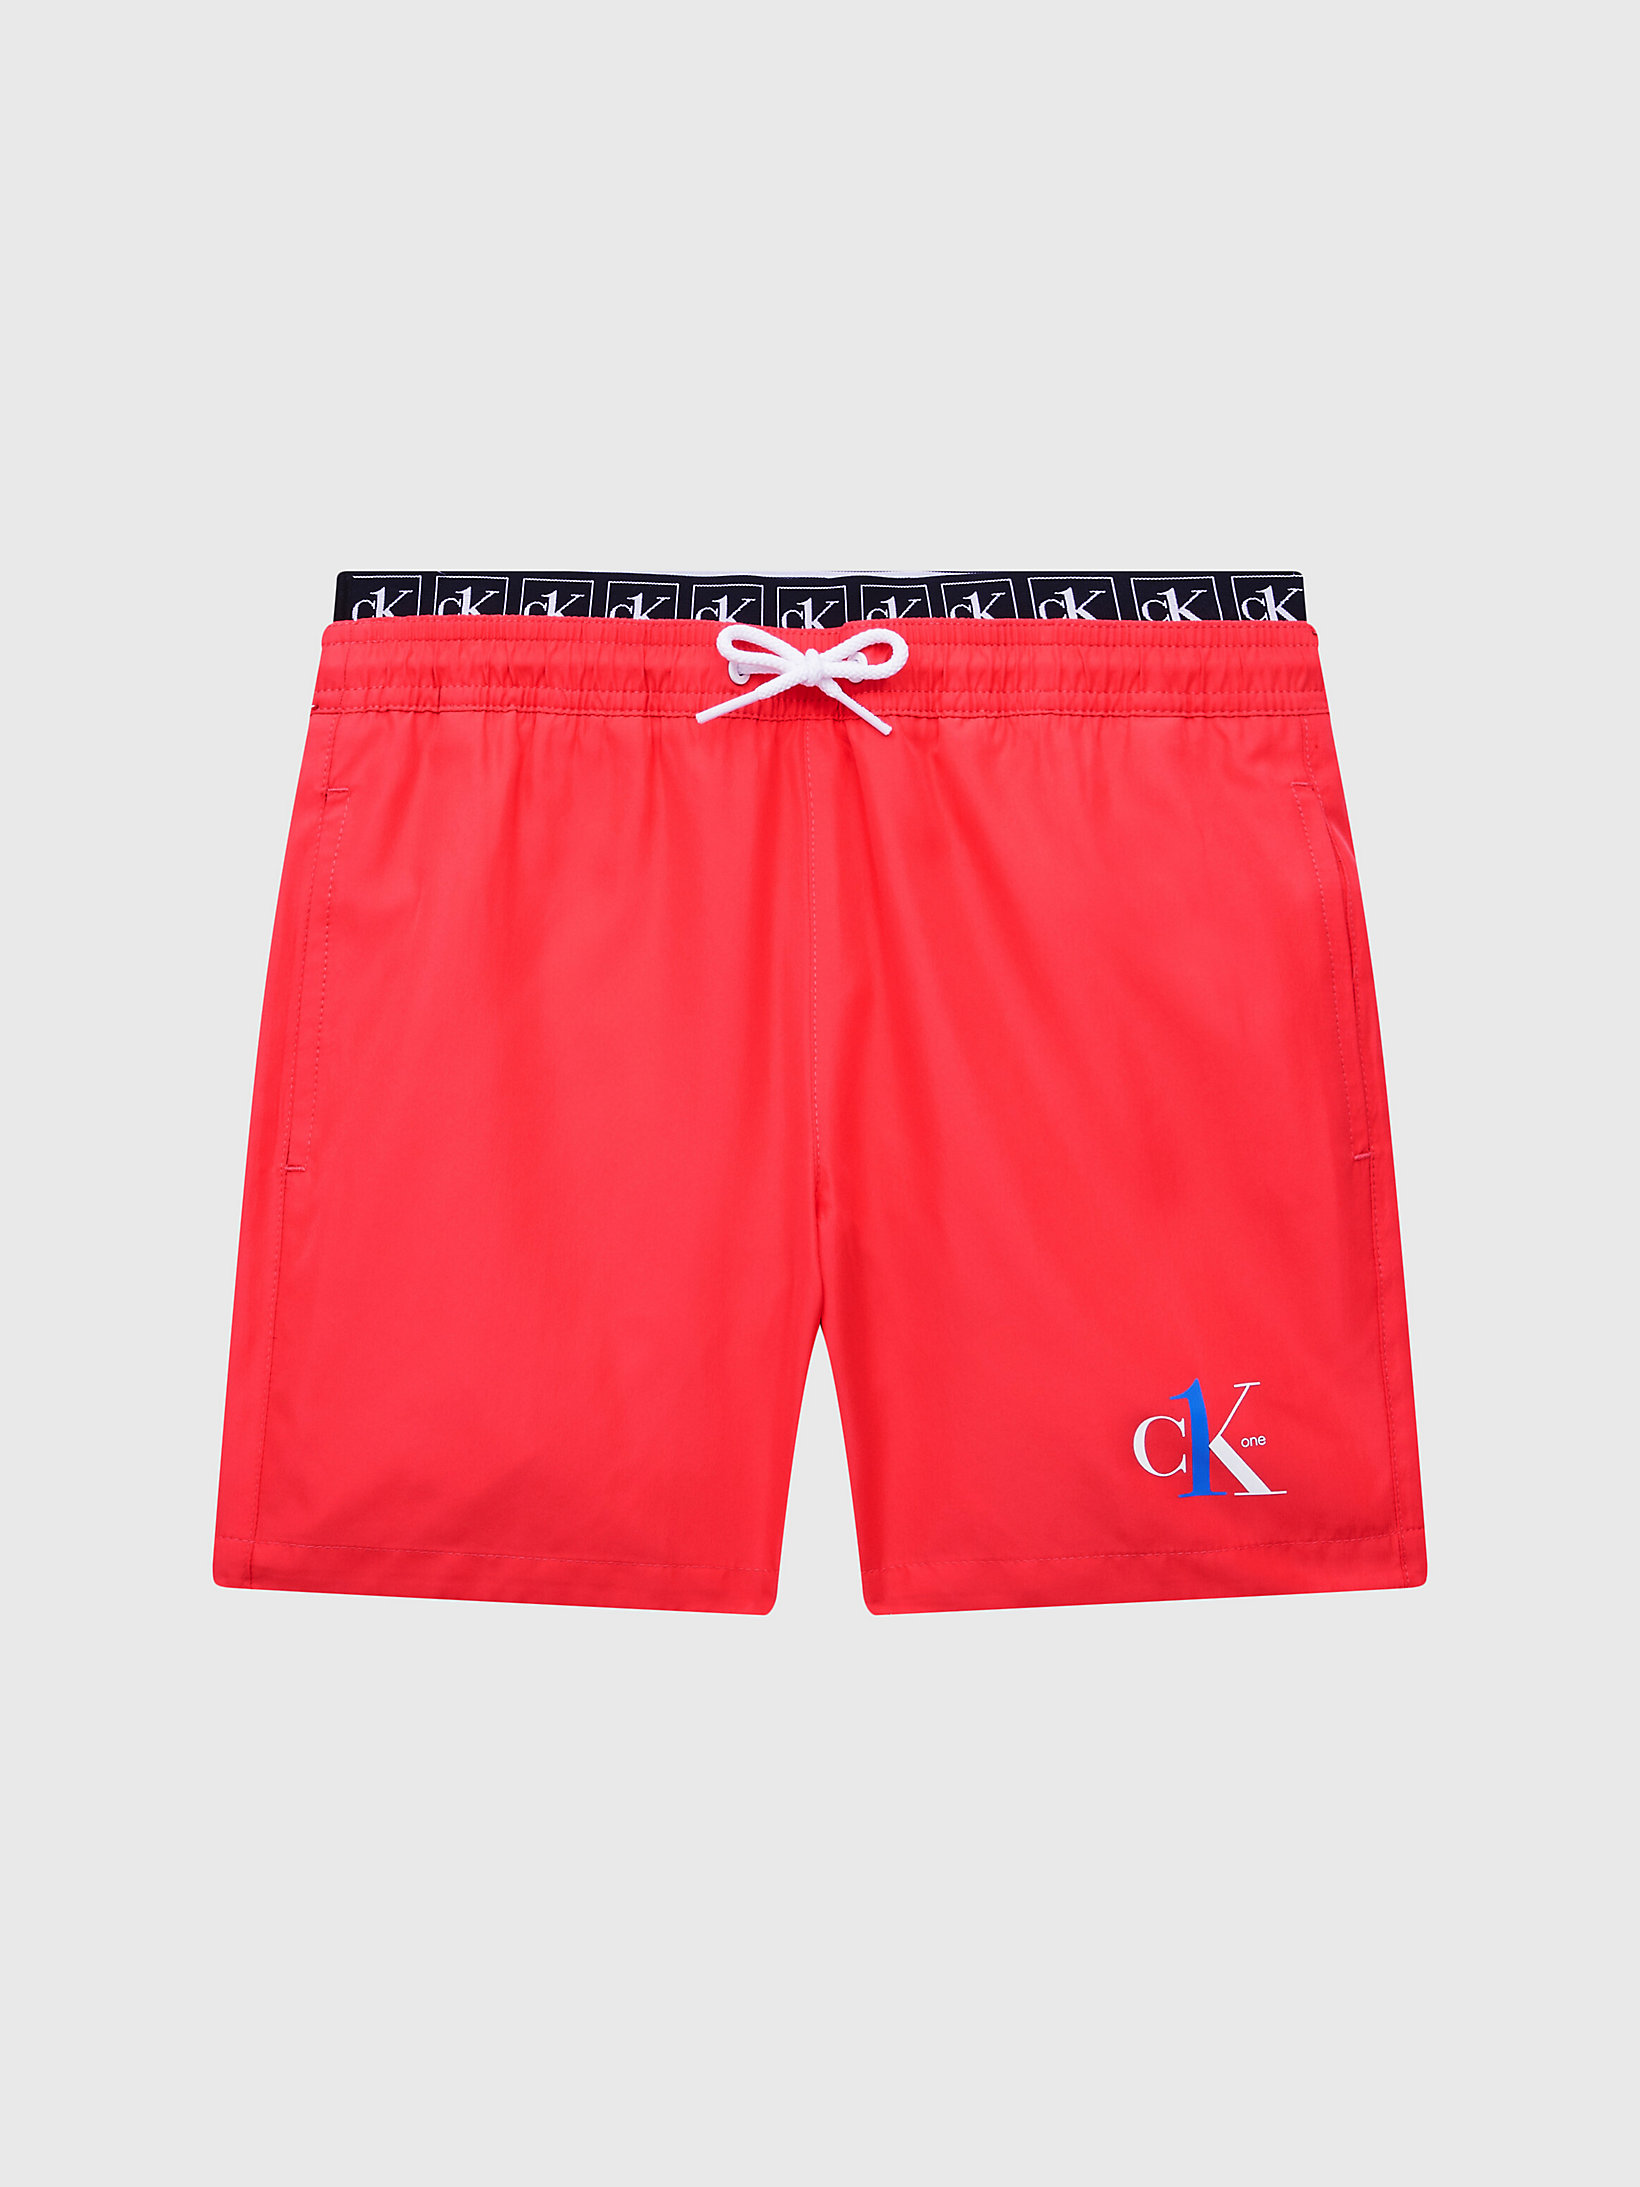 Coral Crush > Купальные шорты для мальчиков - CK One > undefined мальчики - Calvin Klein